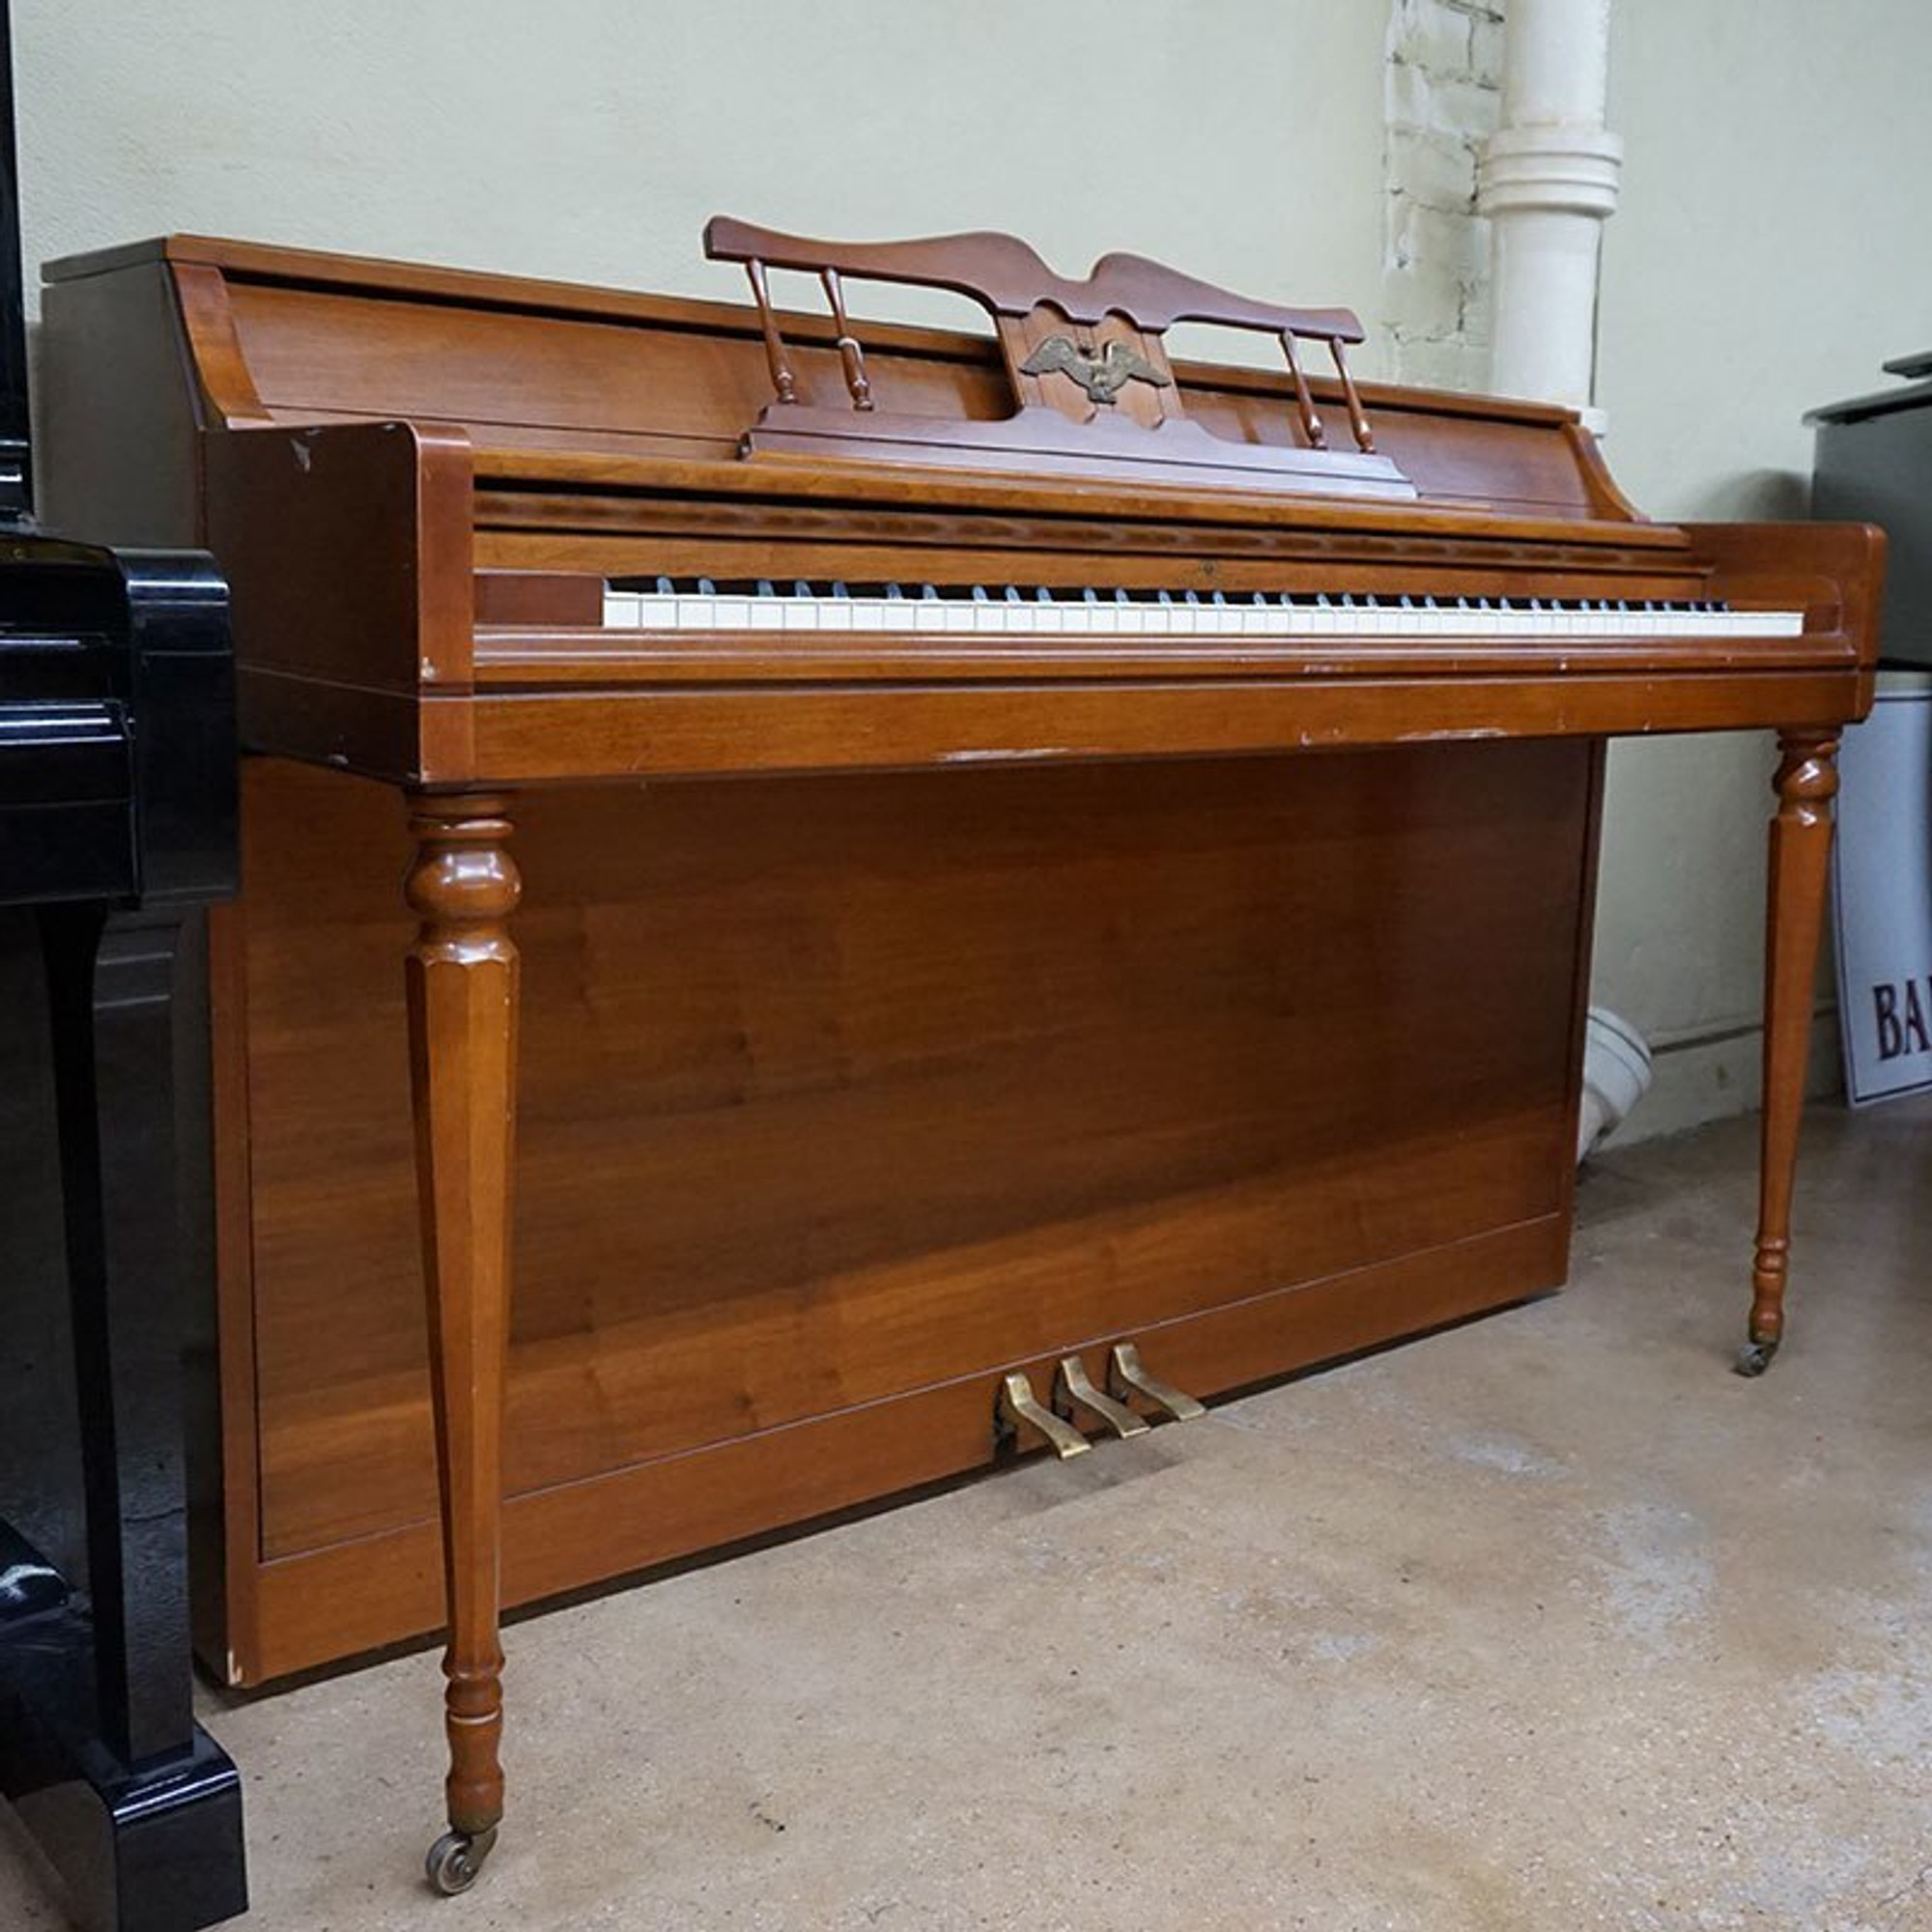 wurlitzer spinet piano for sale